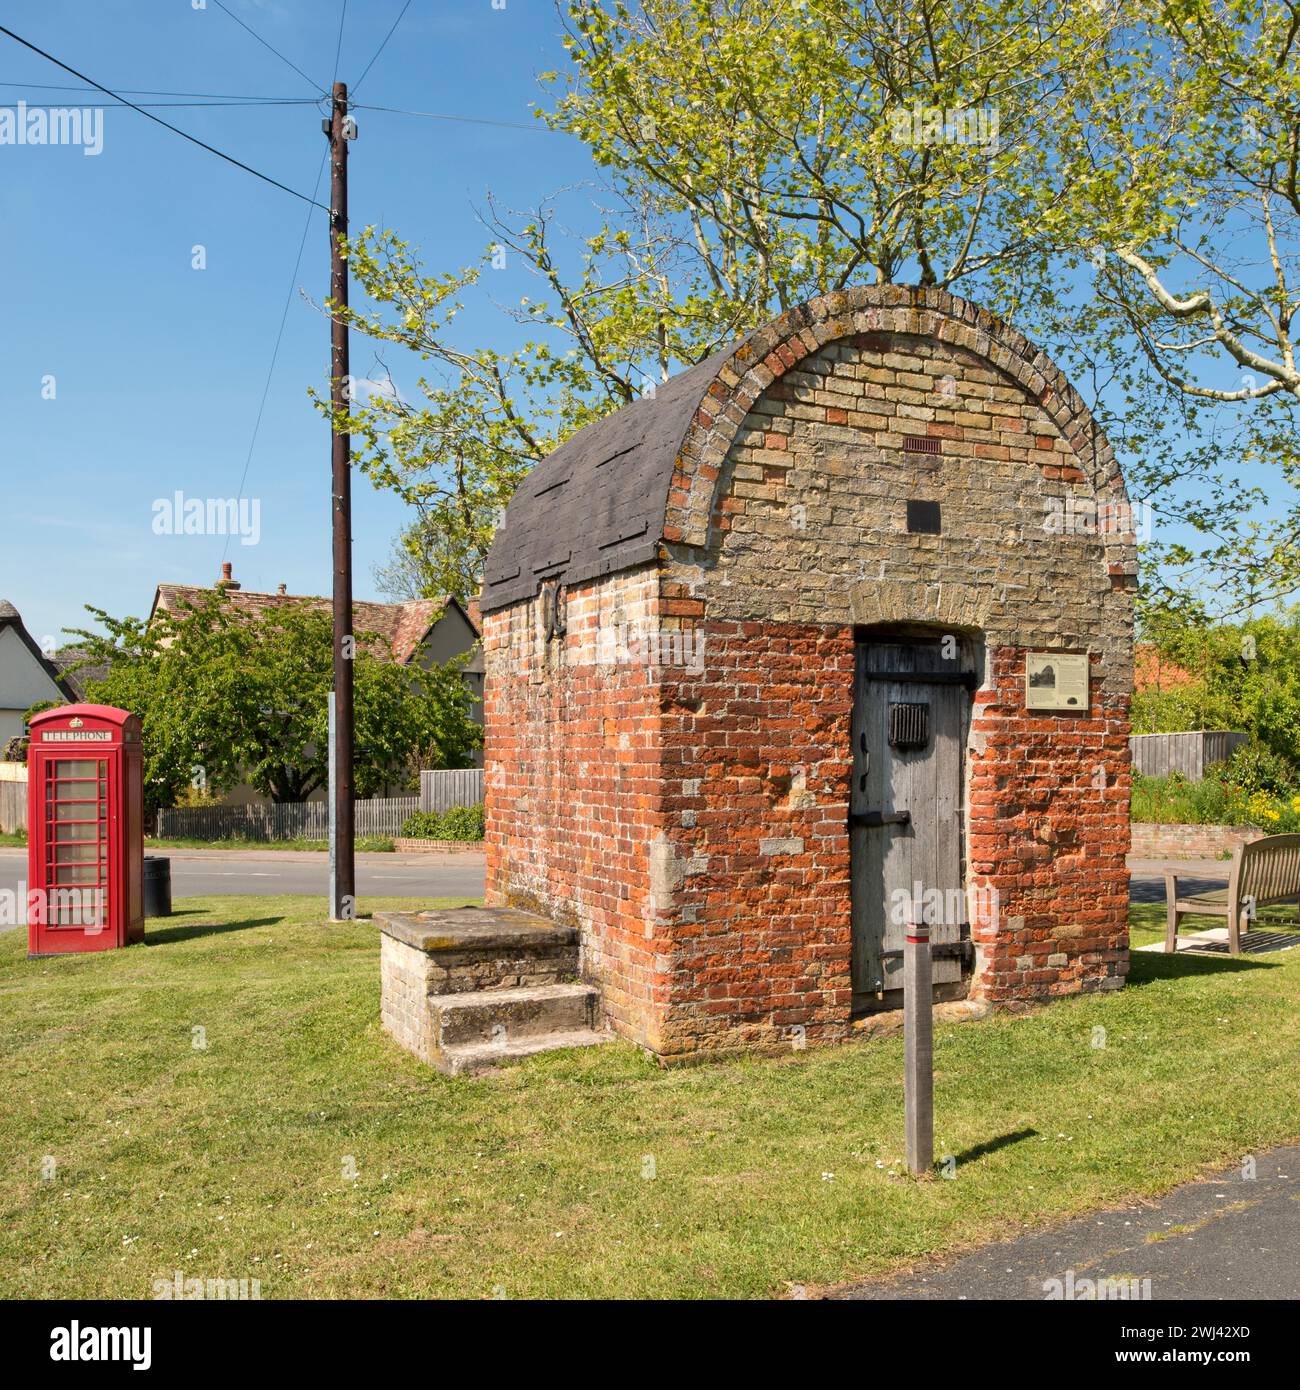 Les cachots du village. Litlington, Cambridgeshire, construit au début du XVIIIe siècle, connu sous le nom de 'The cage', 'St.Peter's Hole' et 'Litlington cage'. Banque D'Images